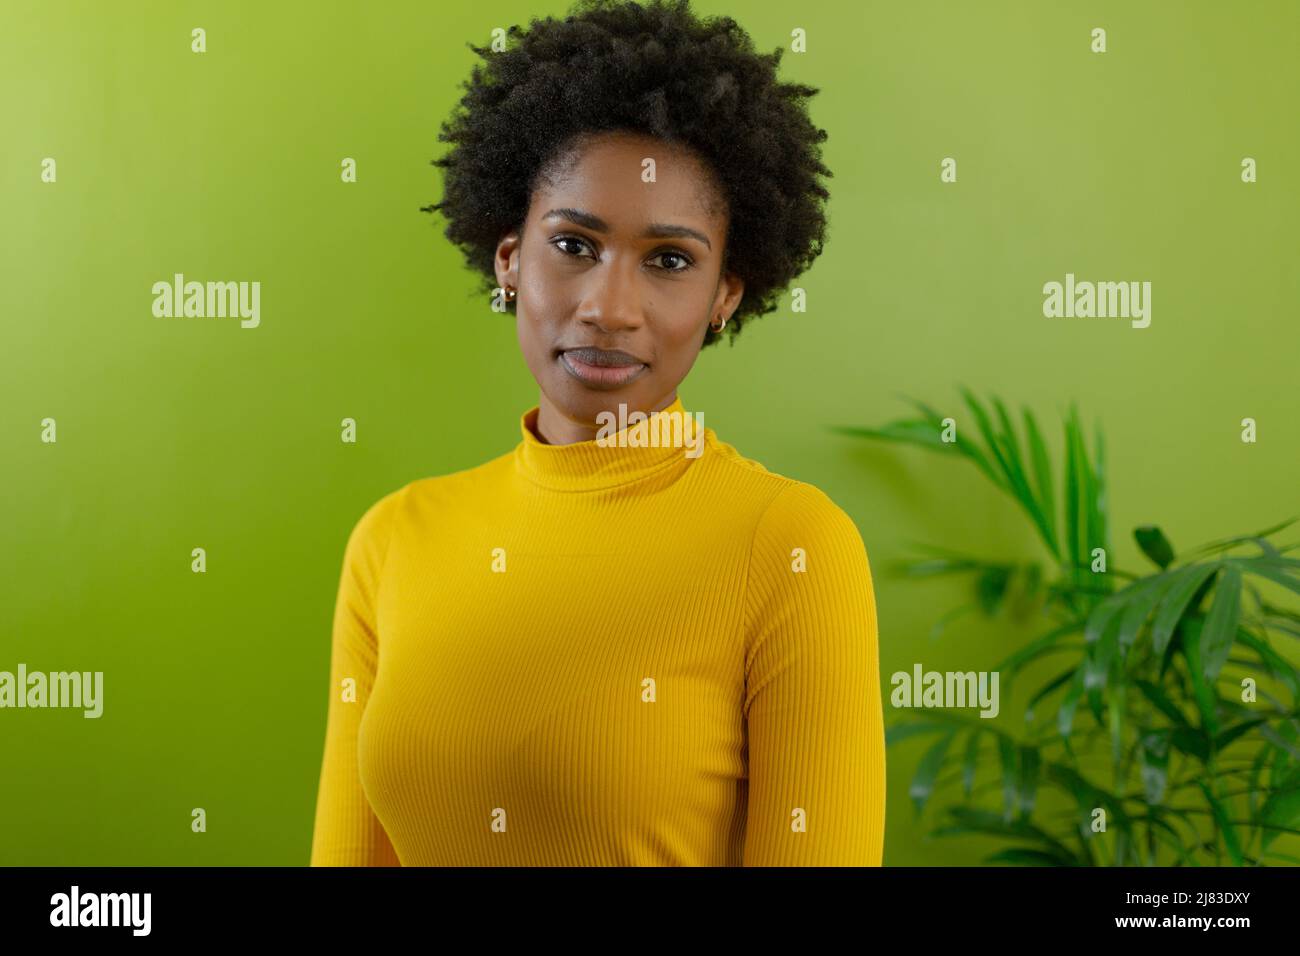 Porträt einer schönen jungen afroamerikanischen Berater-Frau mit Afro-Frisur gegen grüne Wand Stockfoto